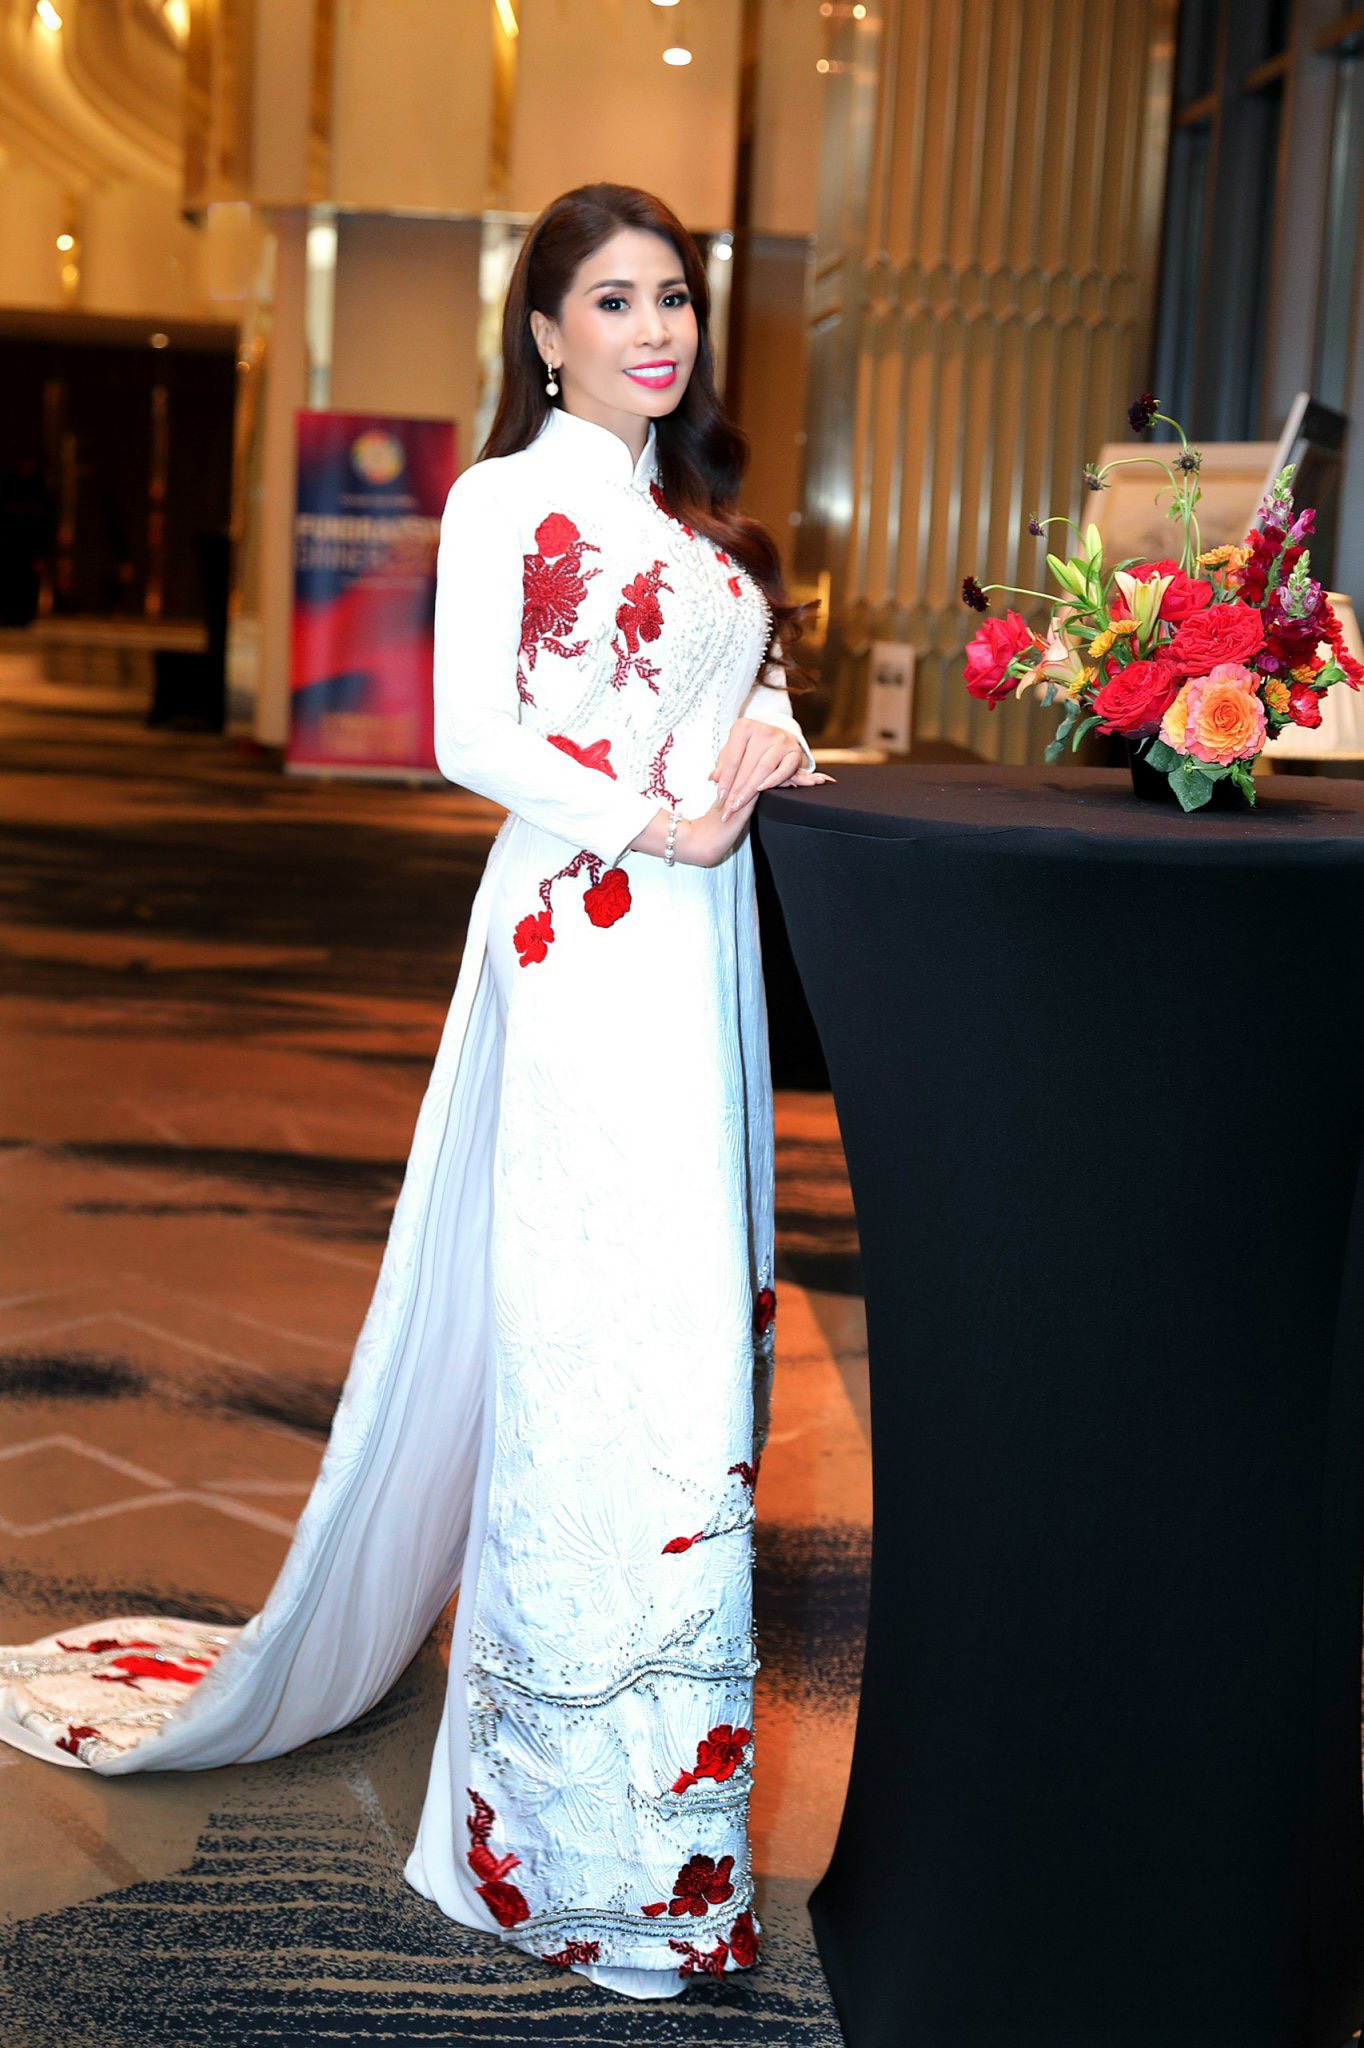 Khi tham dự tiệc, Lý Hương đã thay bộ áo dài Việt Nam với mong muốn giới thiệu tà áo dài truyền thống đến các khách mời. Với nữ diễn viên, áo dài là niềm hãnh diện của người phụ nữ Việt Nam, góp phần lan tỏa đến bạn bè nước ngoài.